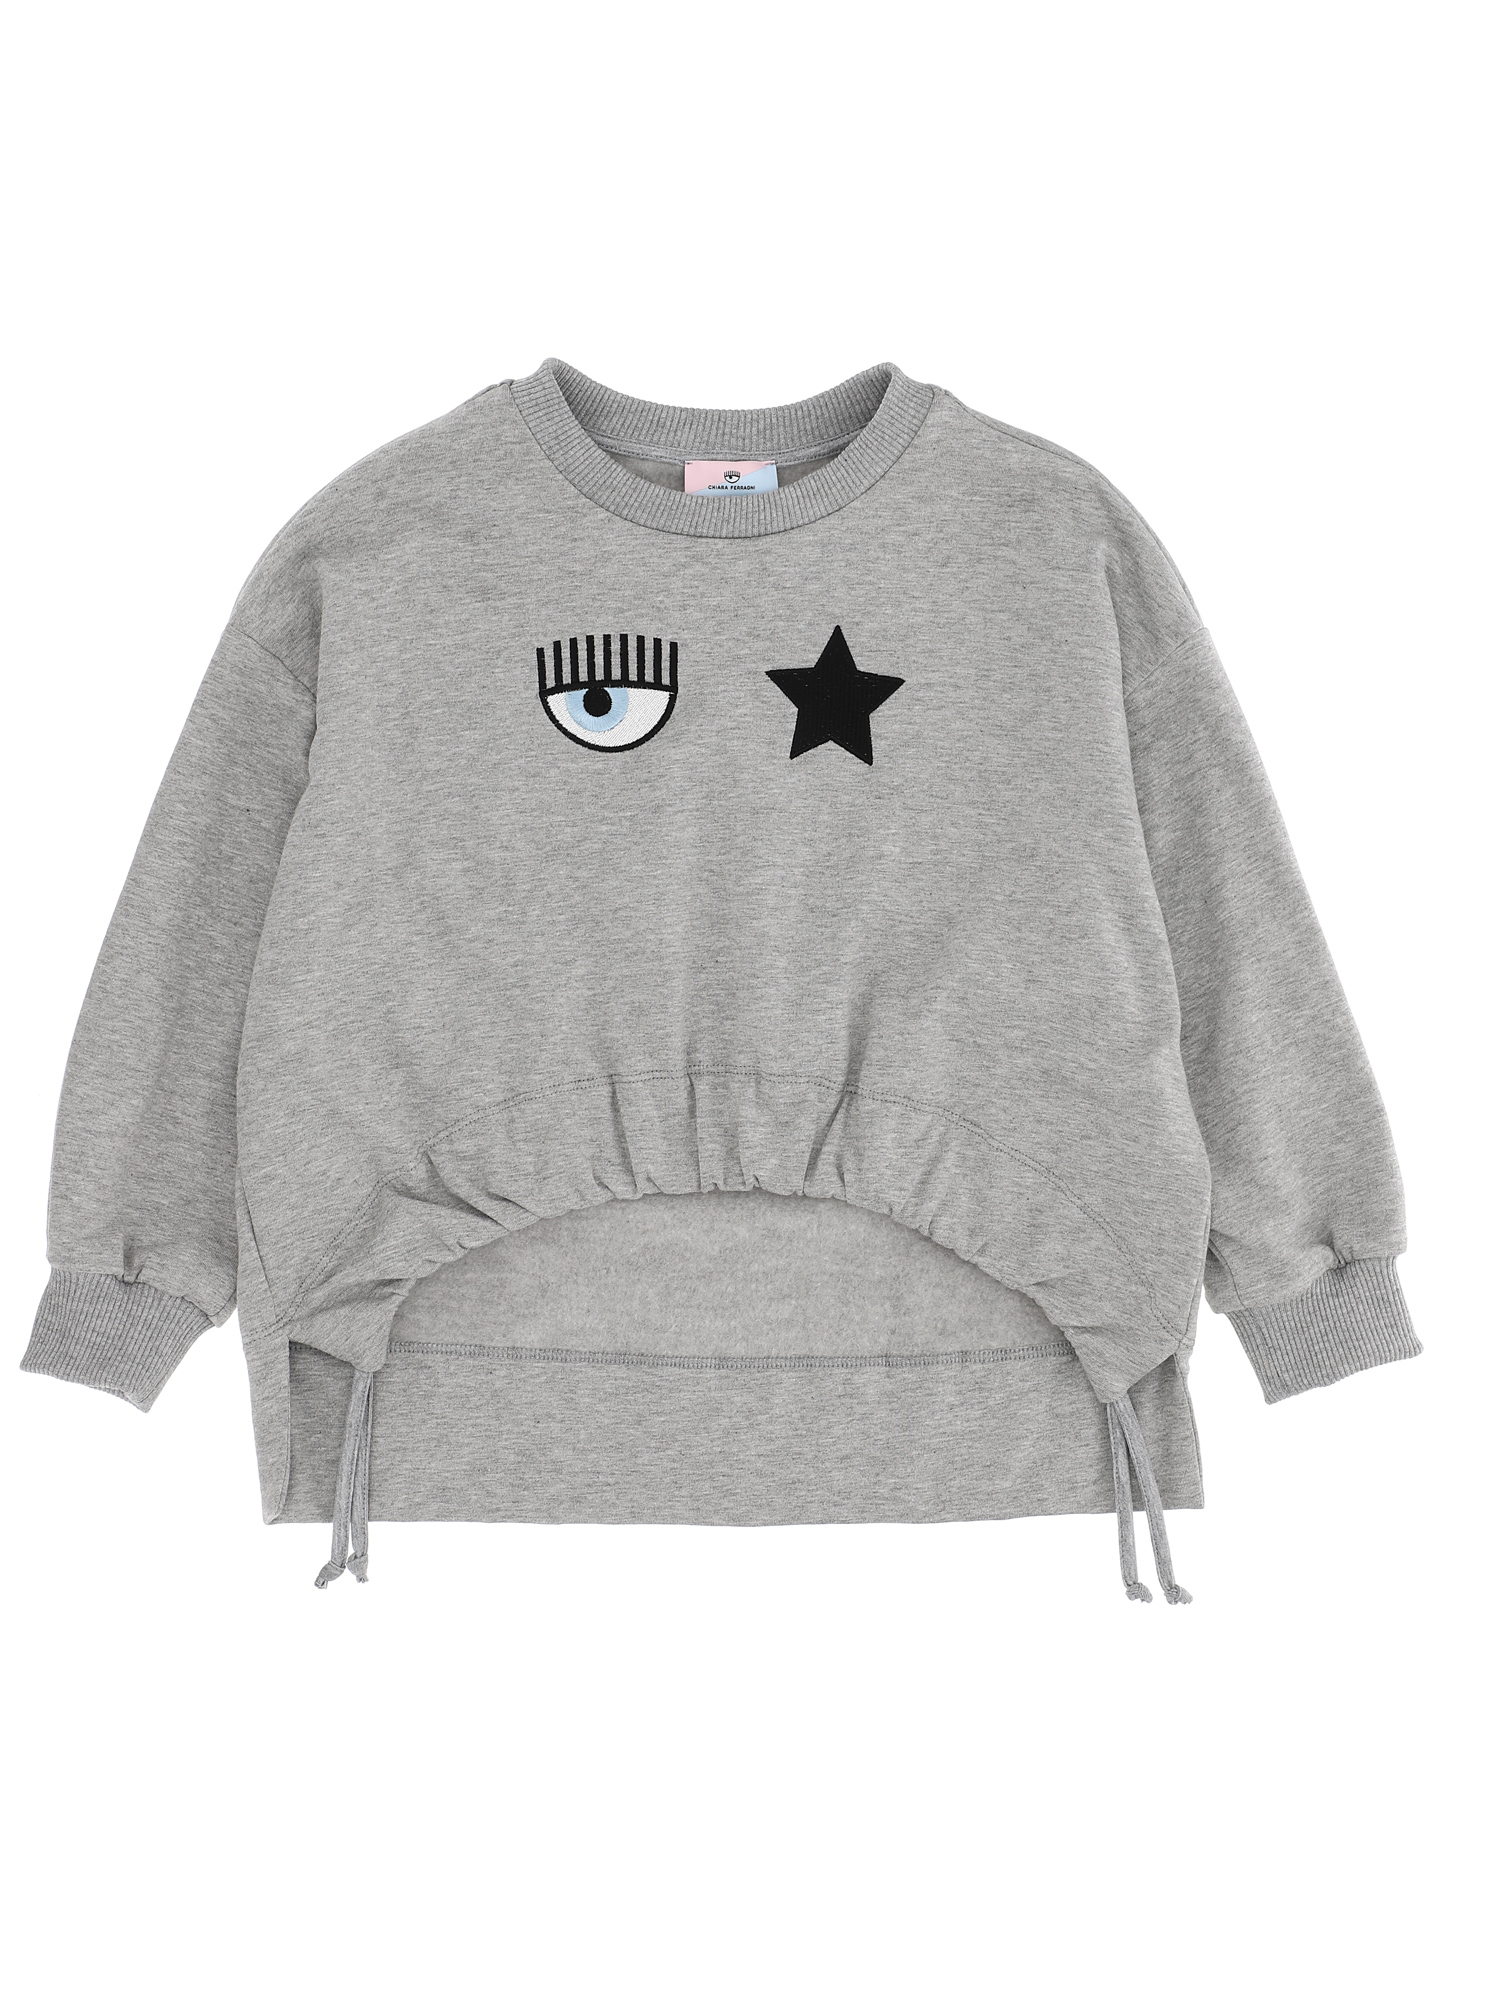 Chiara Ferragni Eyestar Sweatshirt In Grey